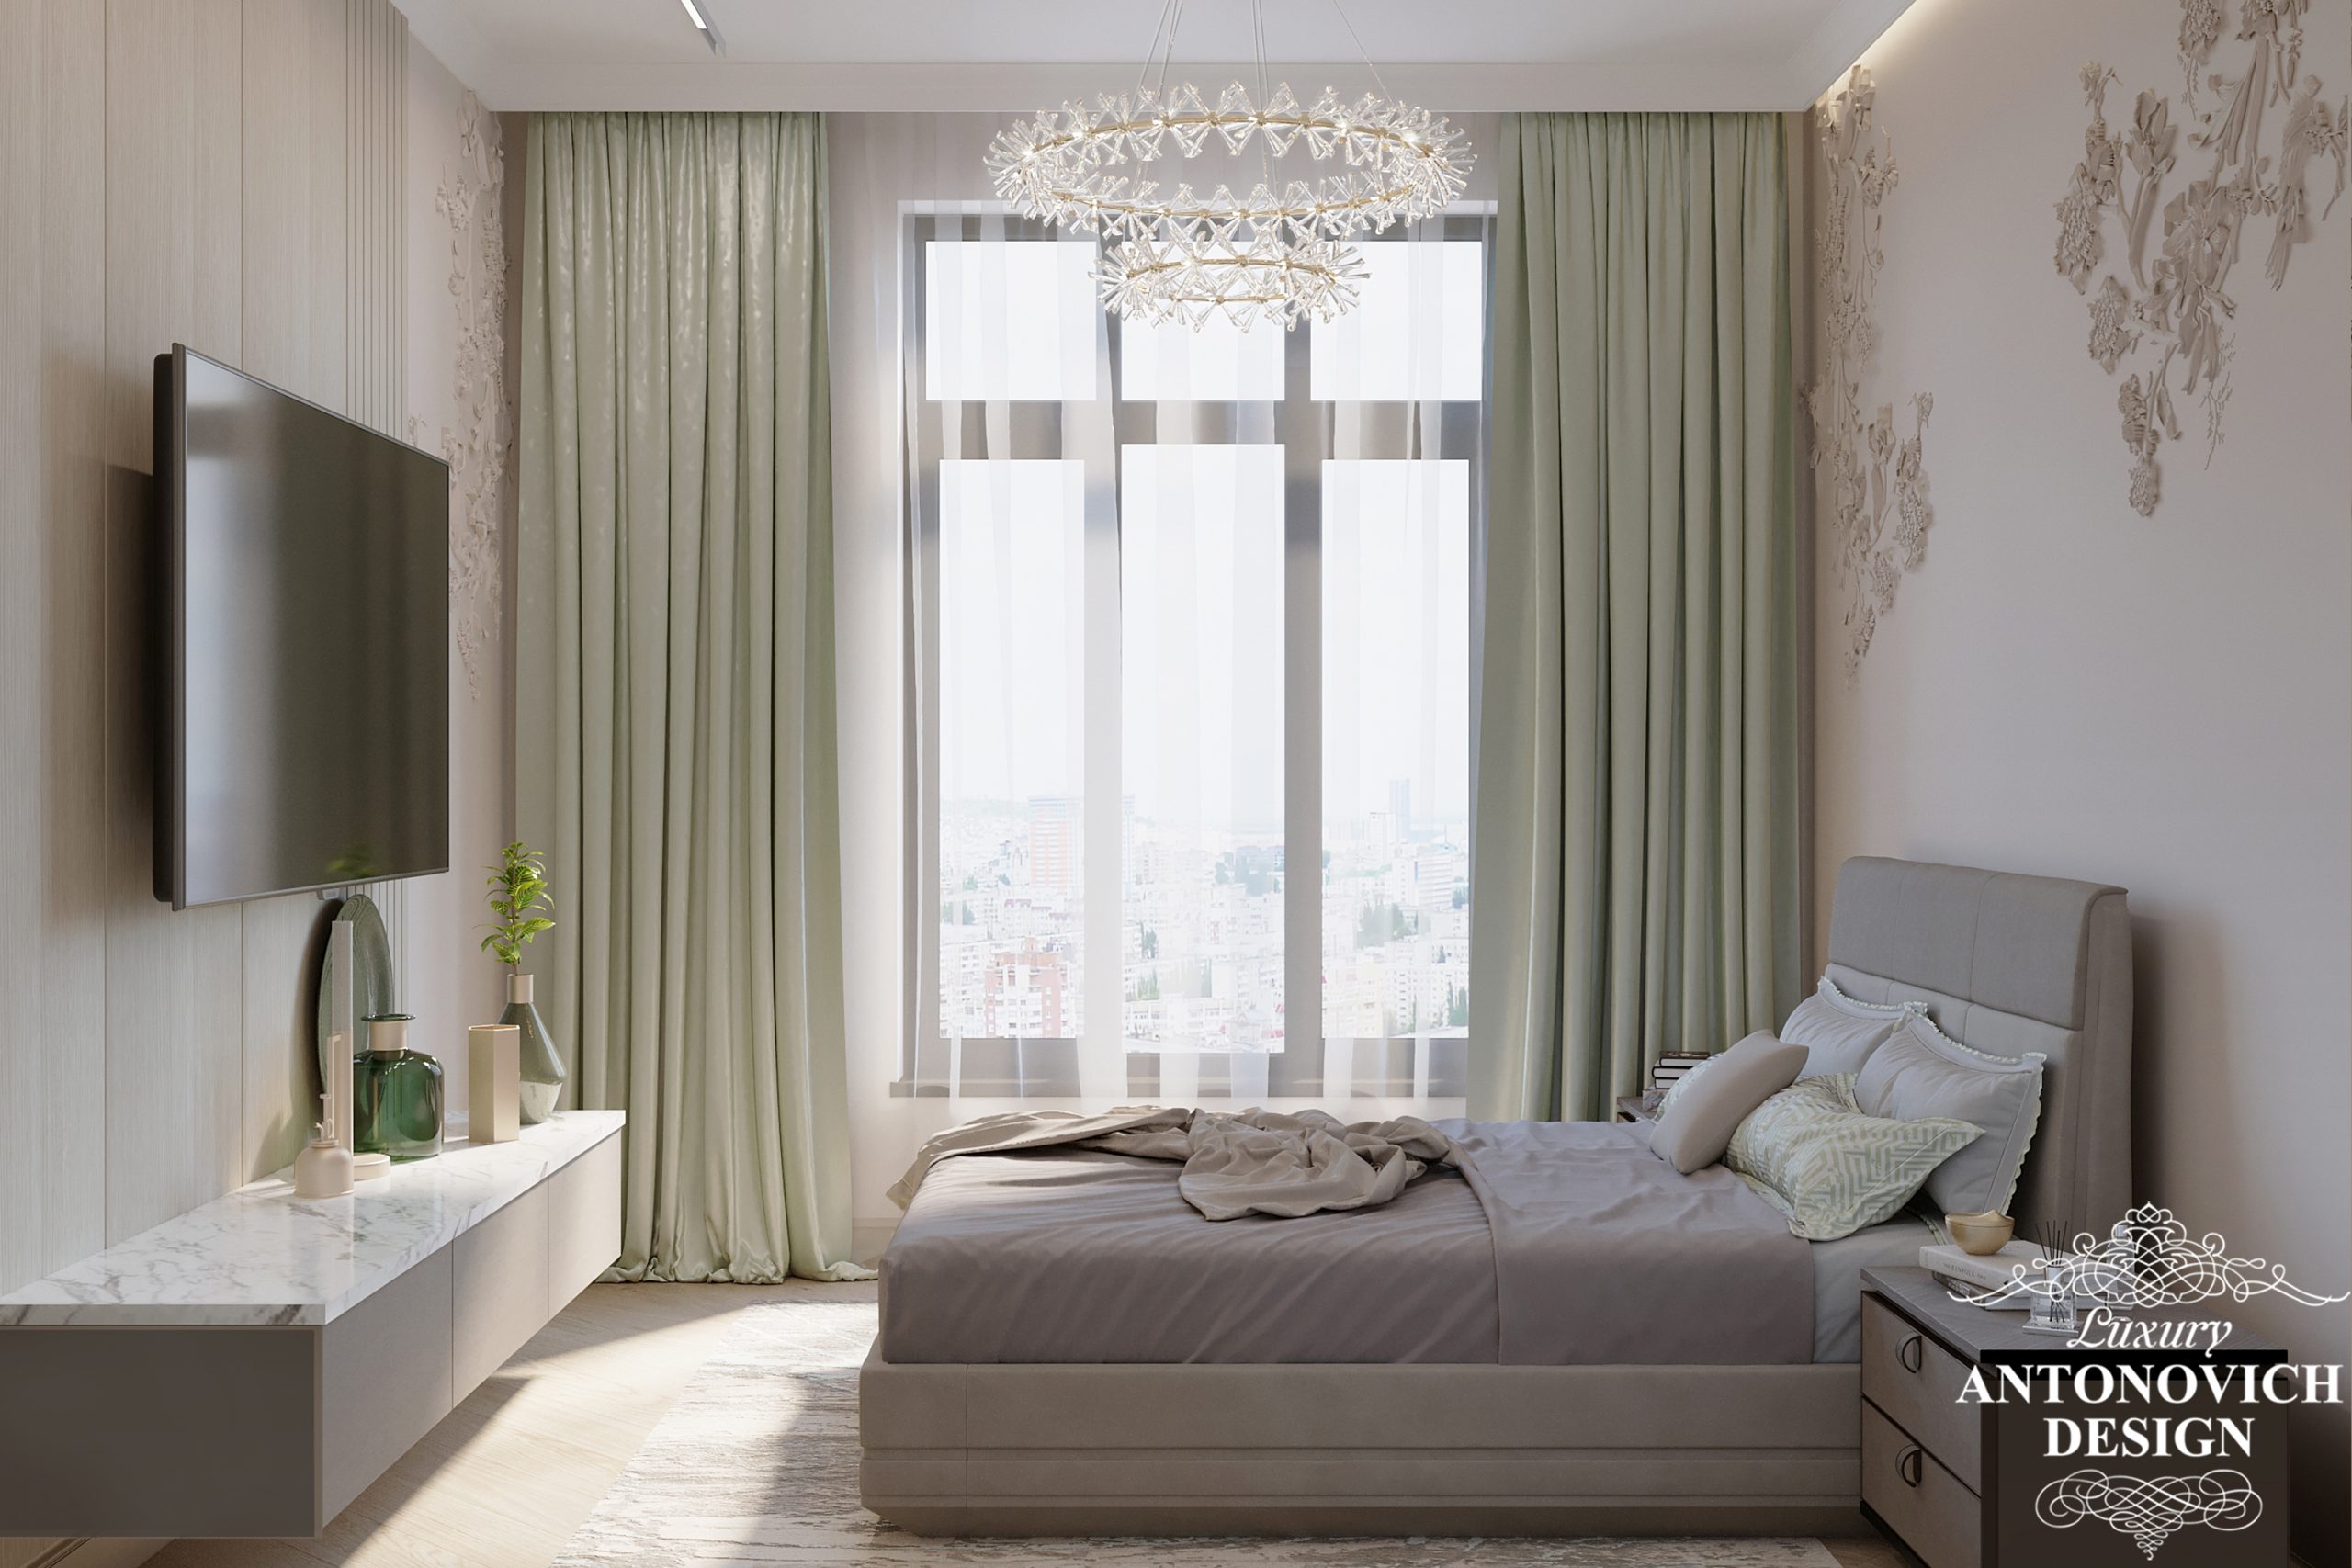 Світлі відтінки і мармурова обробка в інтер'єрі гостьової спальні в квартирі класу люкс